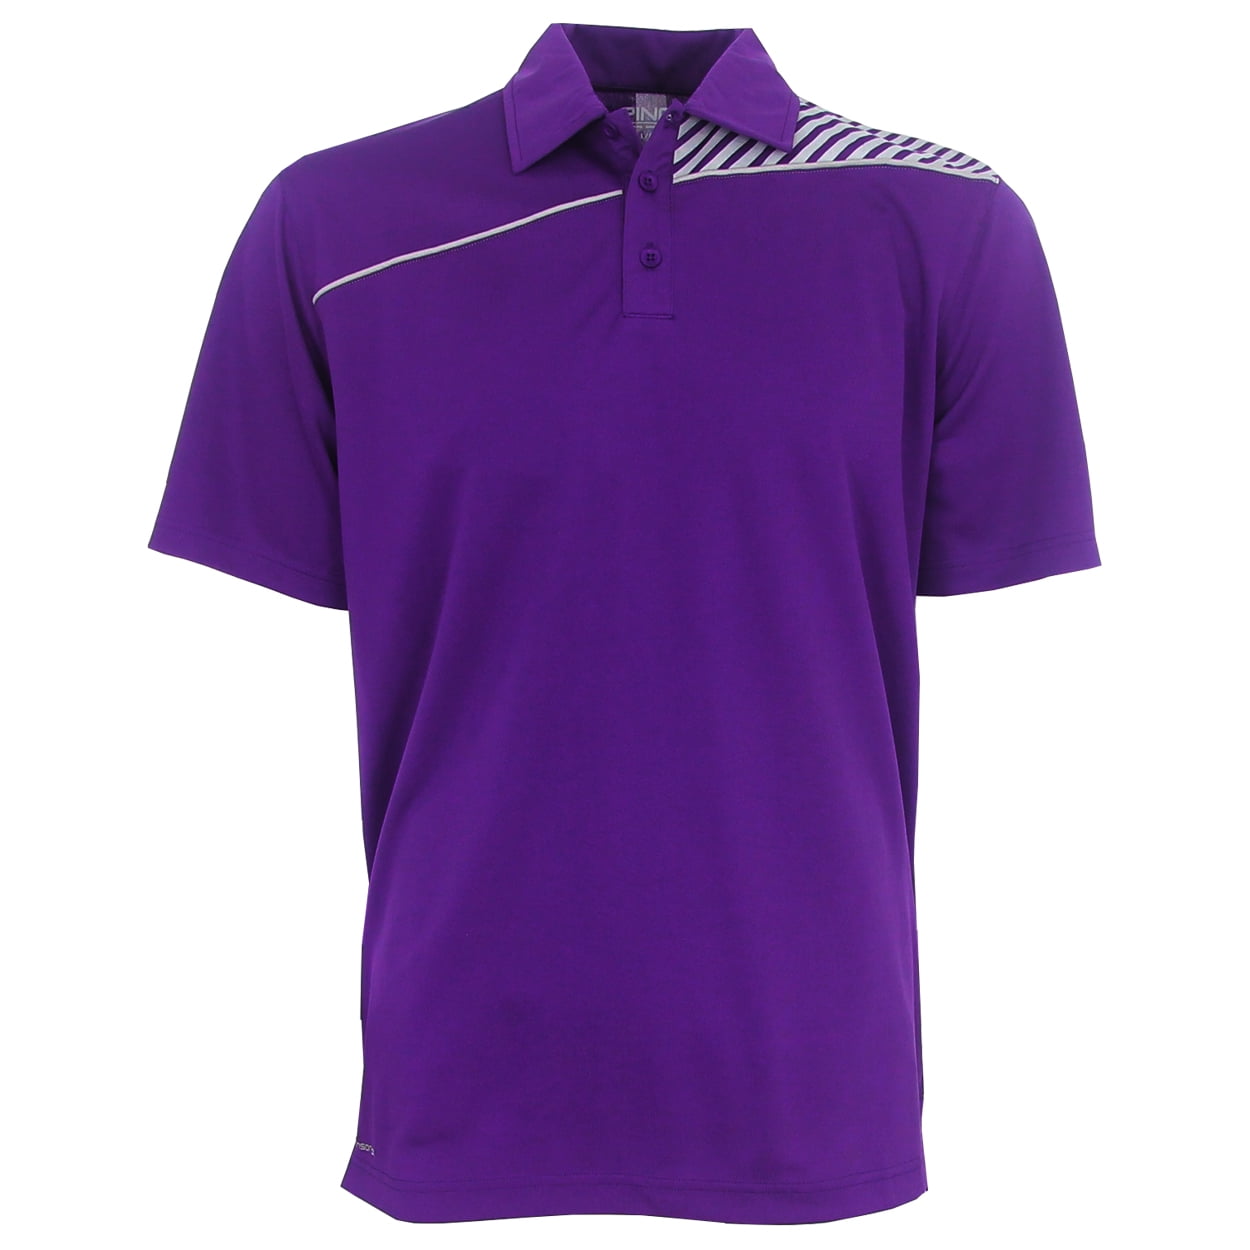 PING Golf Men's Approach Sensorcool Polo Shirt, Brand NEW - - Walmart.com